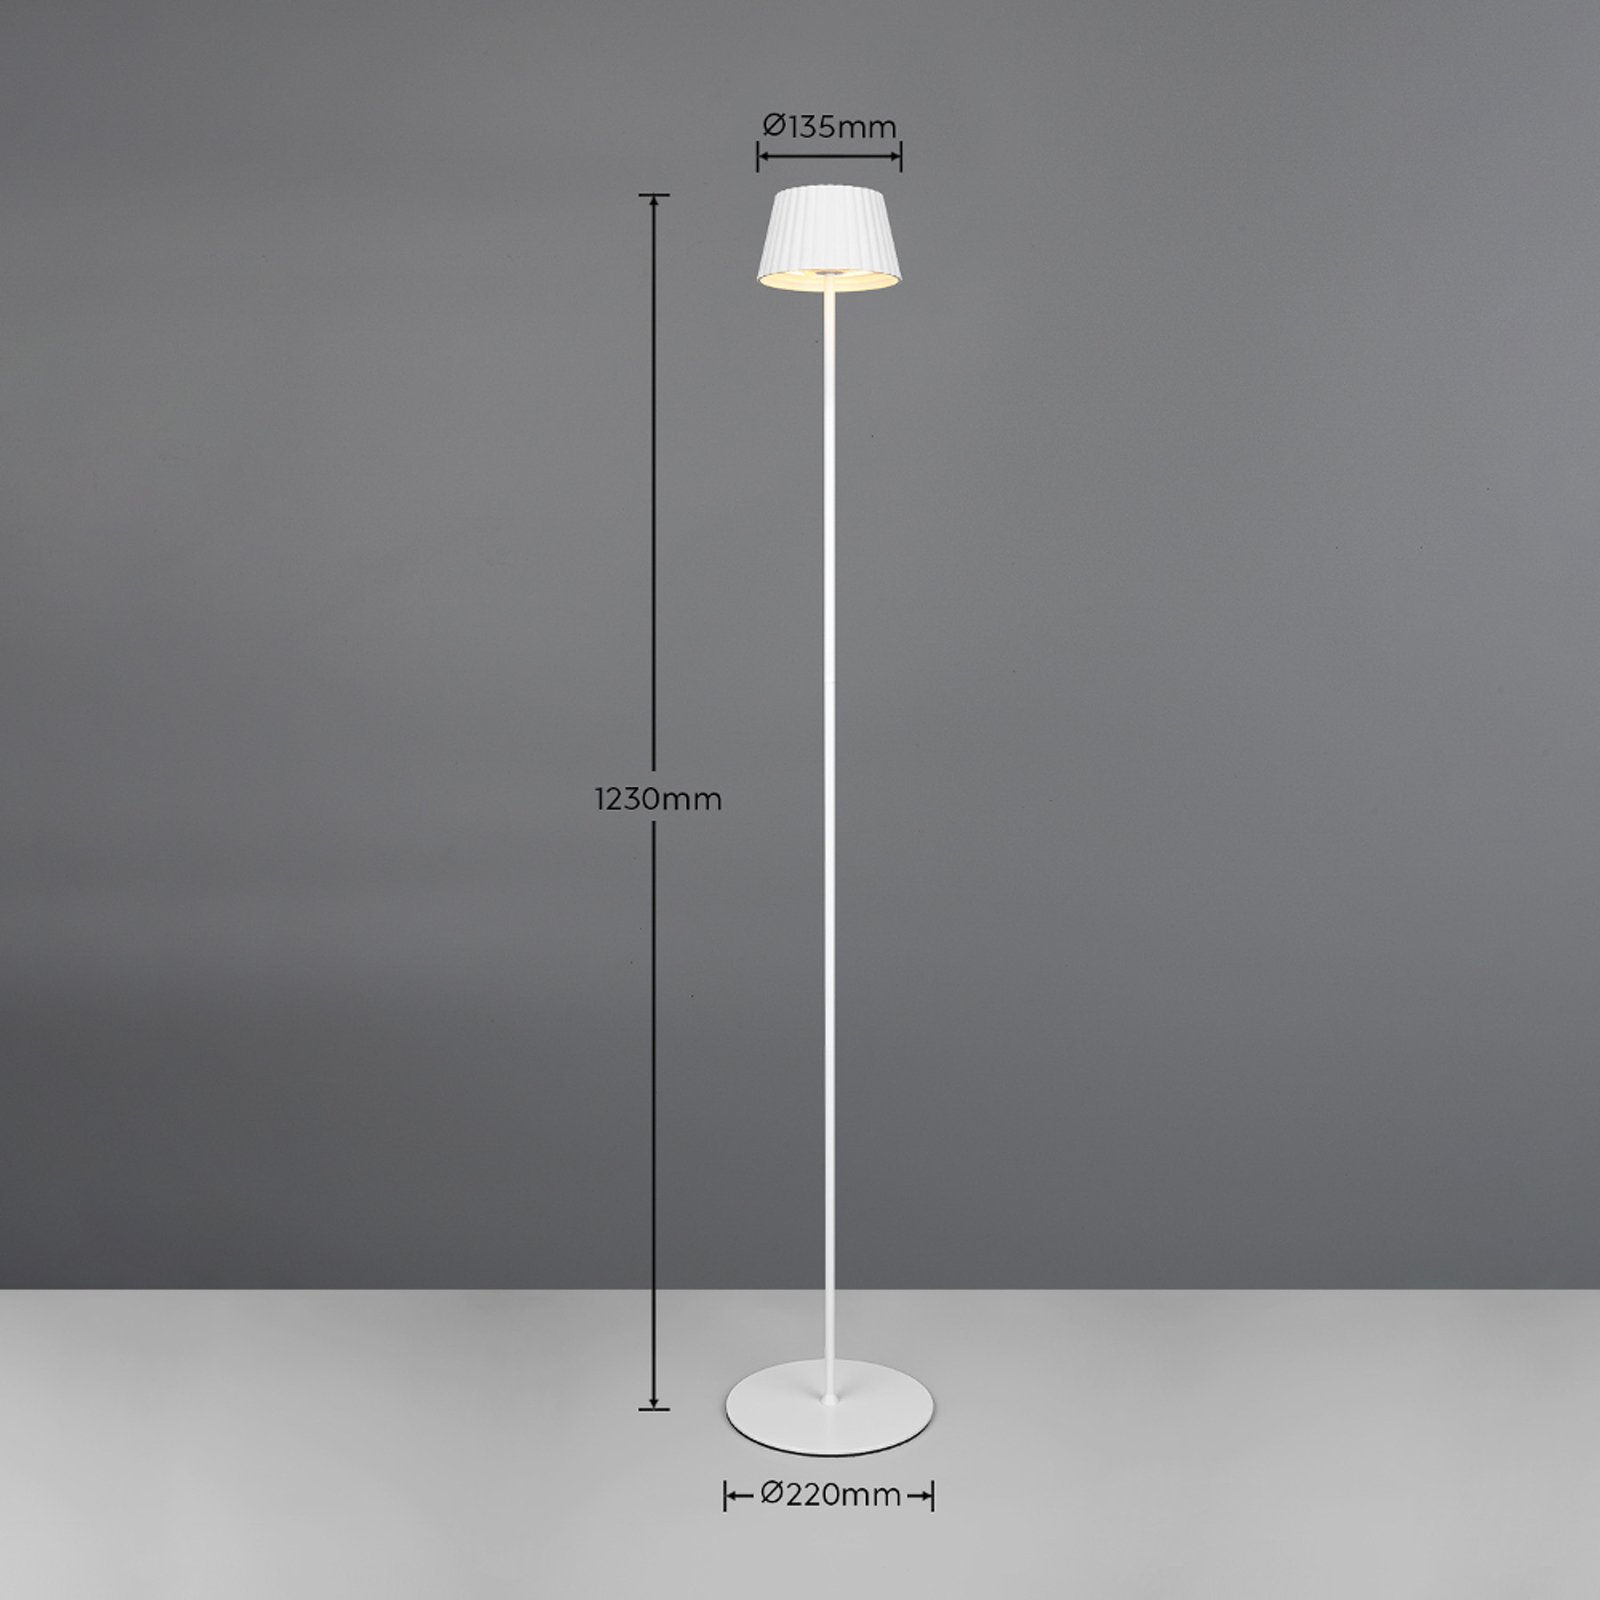 LED vloerlamp Suarez, wit, hoogte 123 cm, metaal